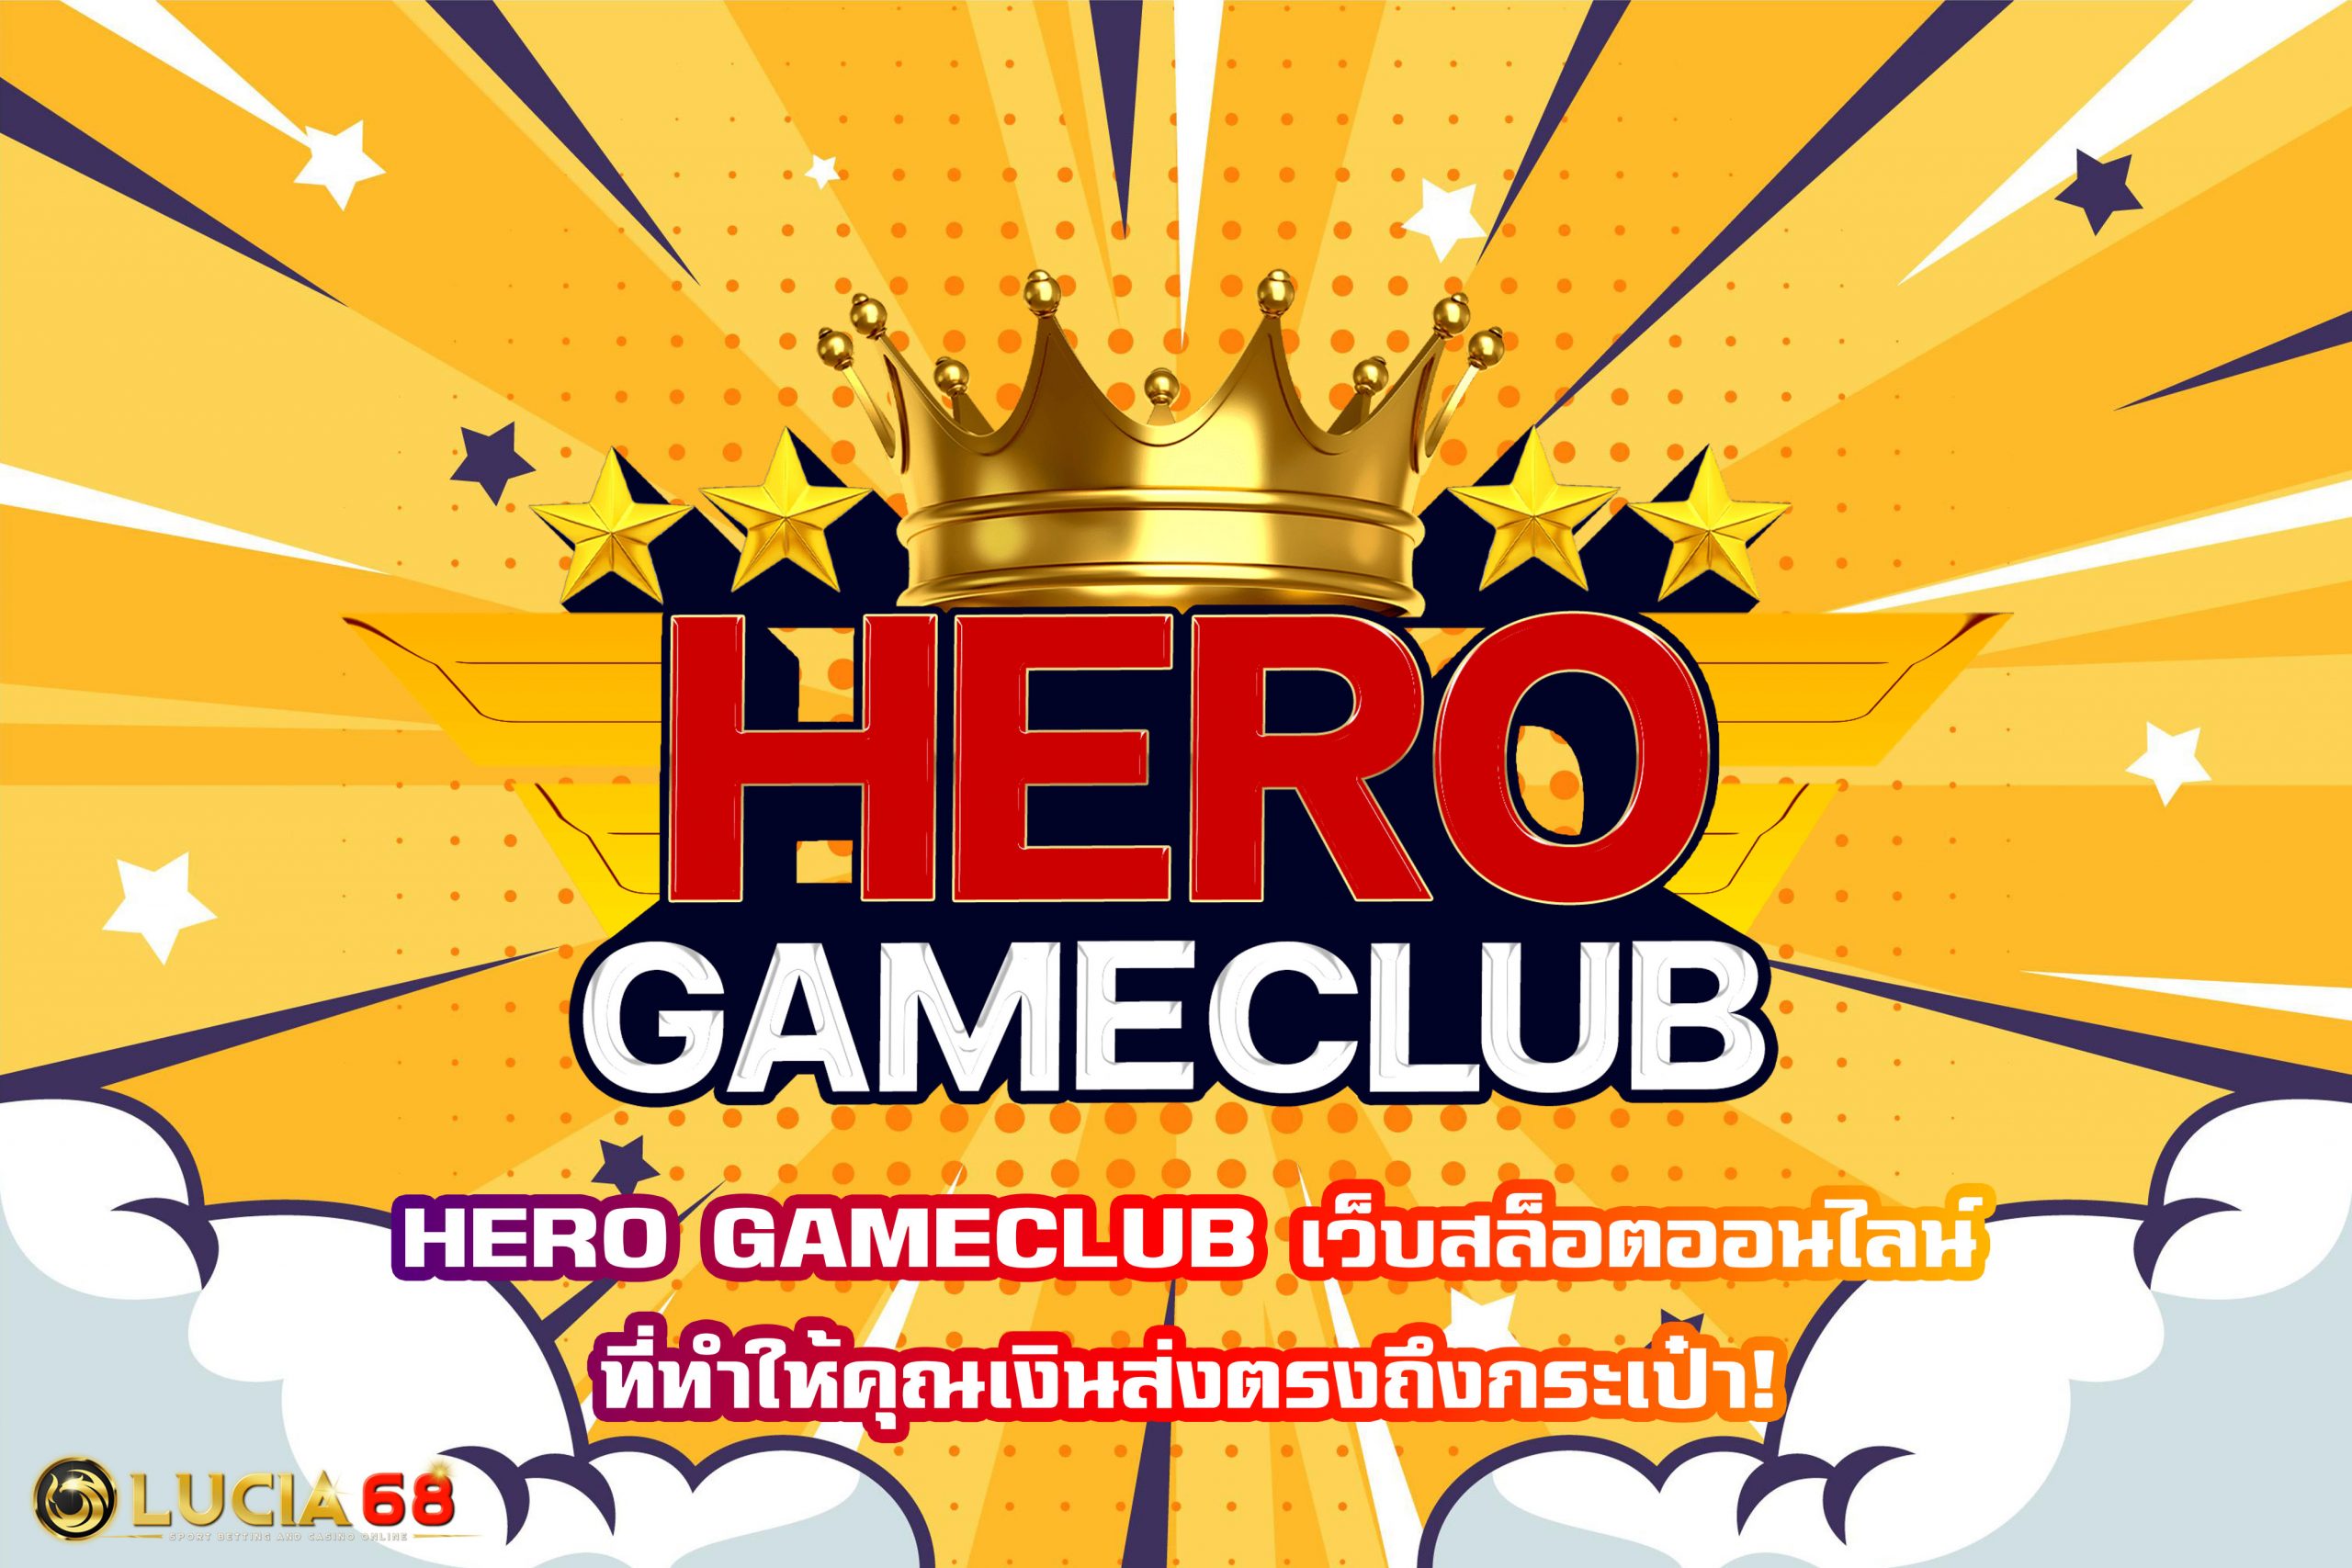 HERO GAMECLUB เว็บสล็อตออนไลน์ที่ทำให้คุณเงินส่งตรงถึงกระเป๋า!